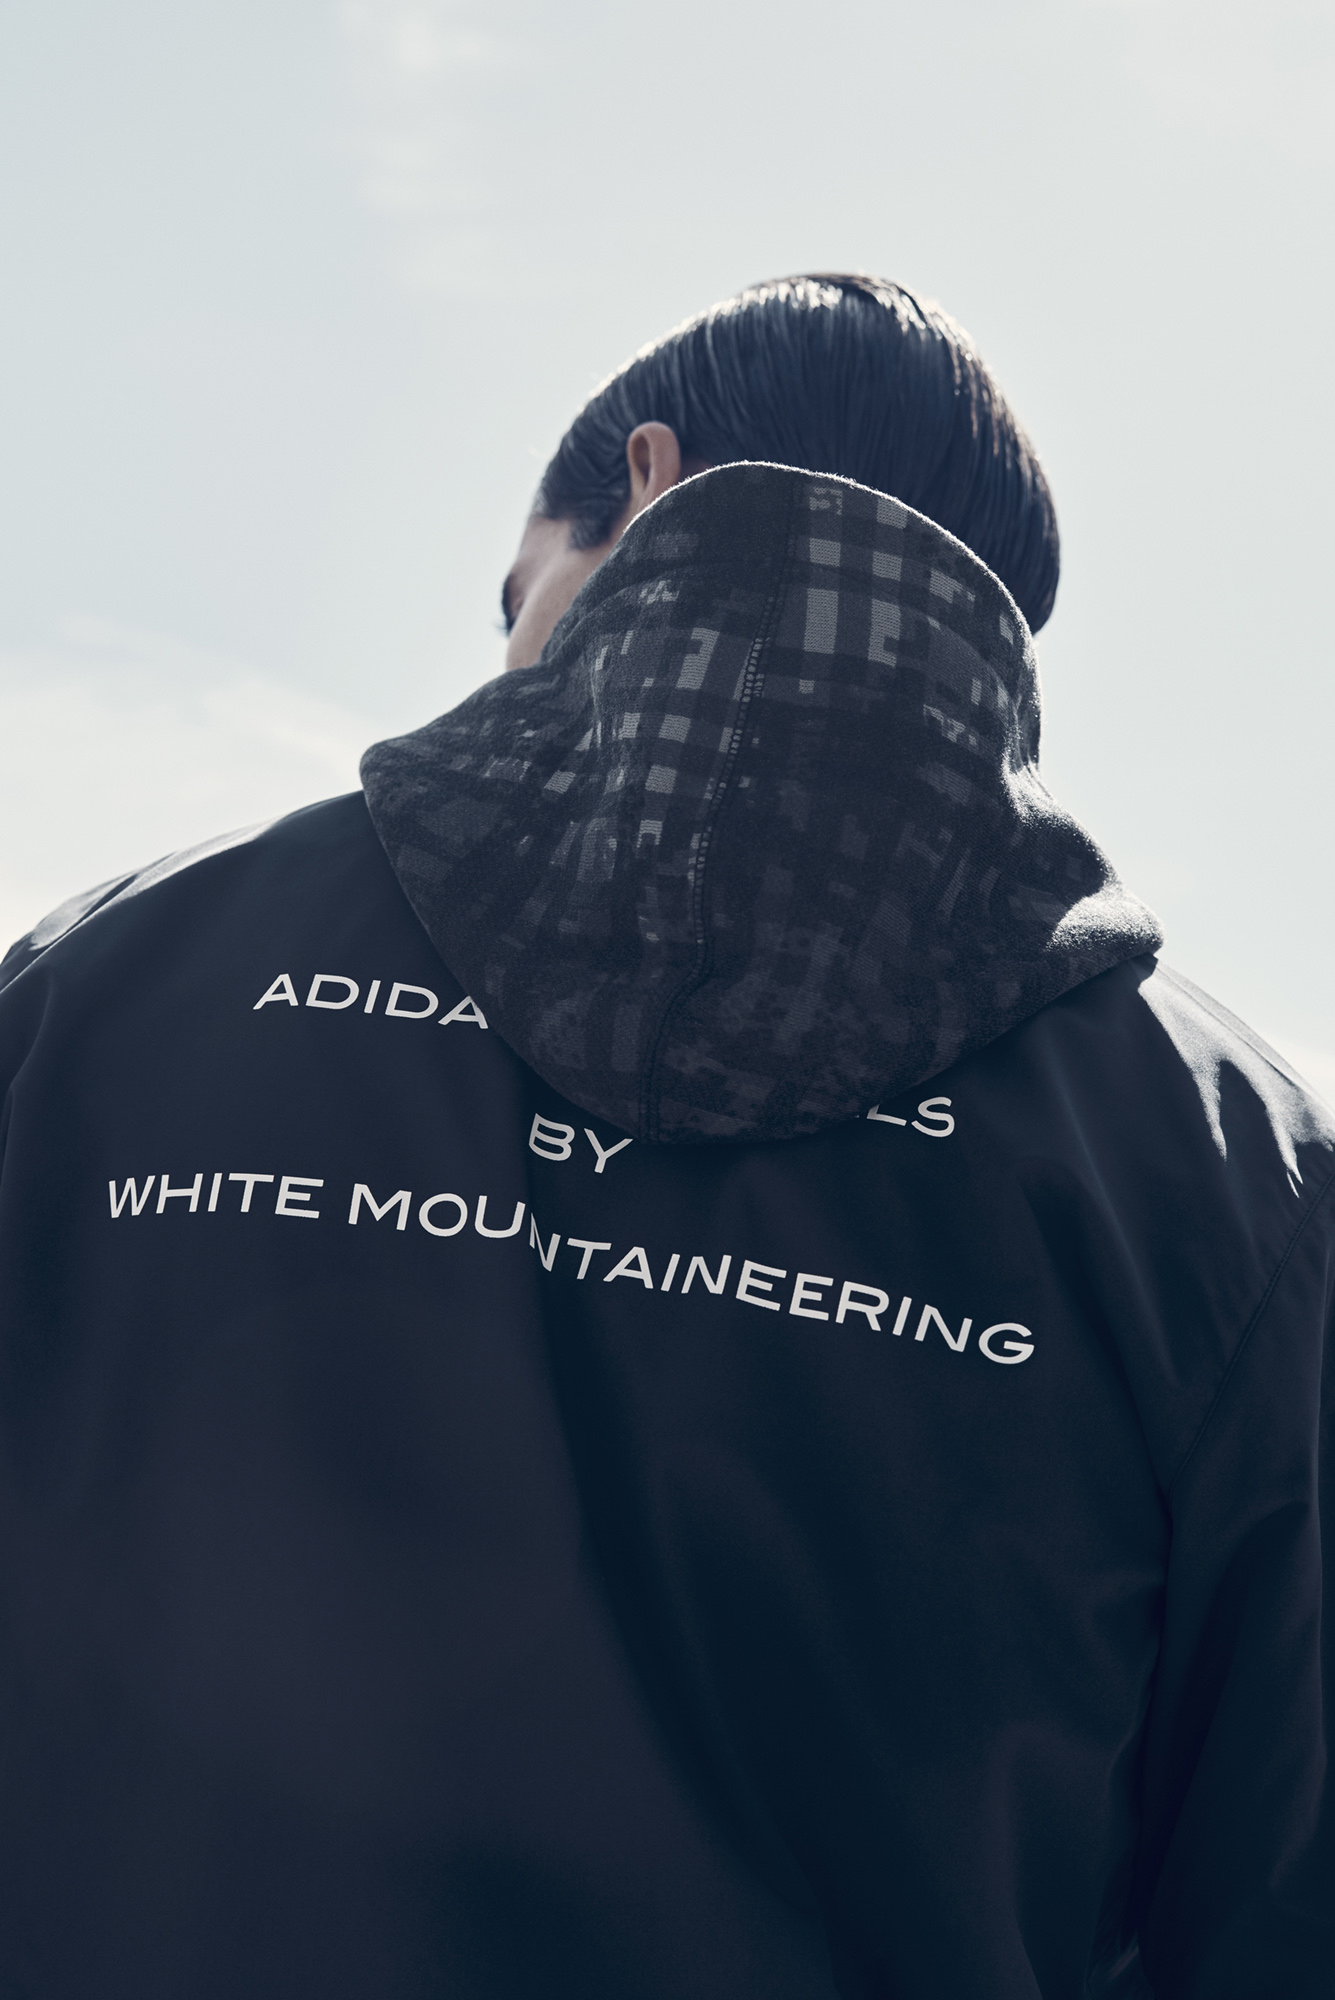 adidasoriginals_whitemountaineering_4